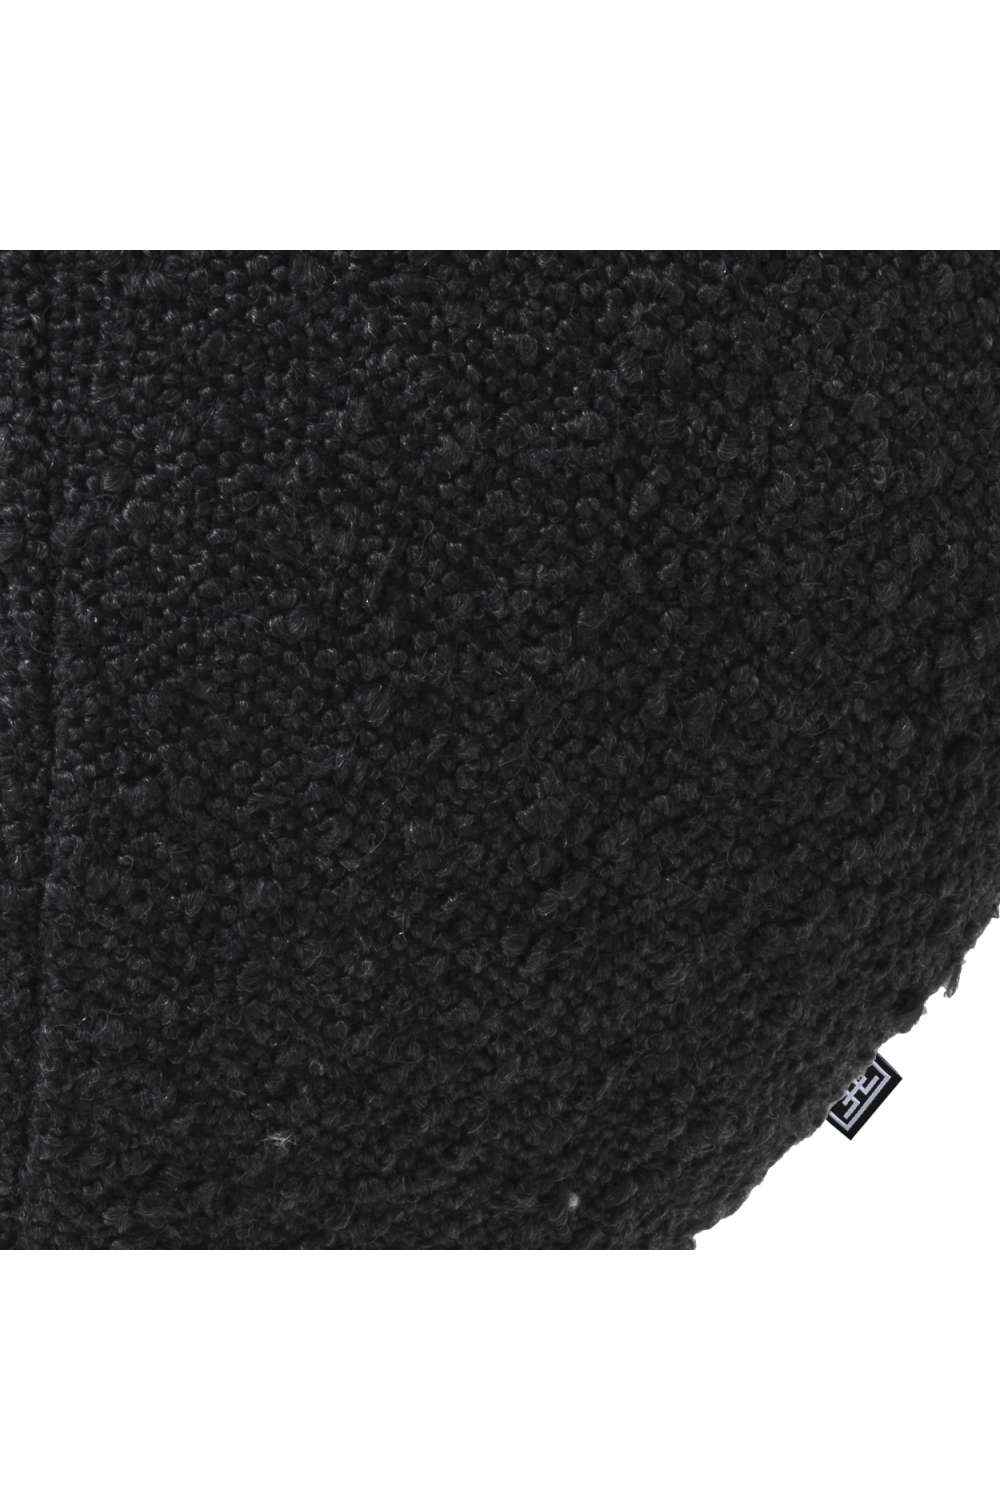 Black Bouclé Ball Cushion | Eichholtz Palla | Oroa.com